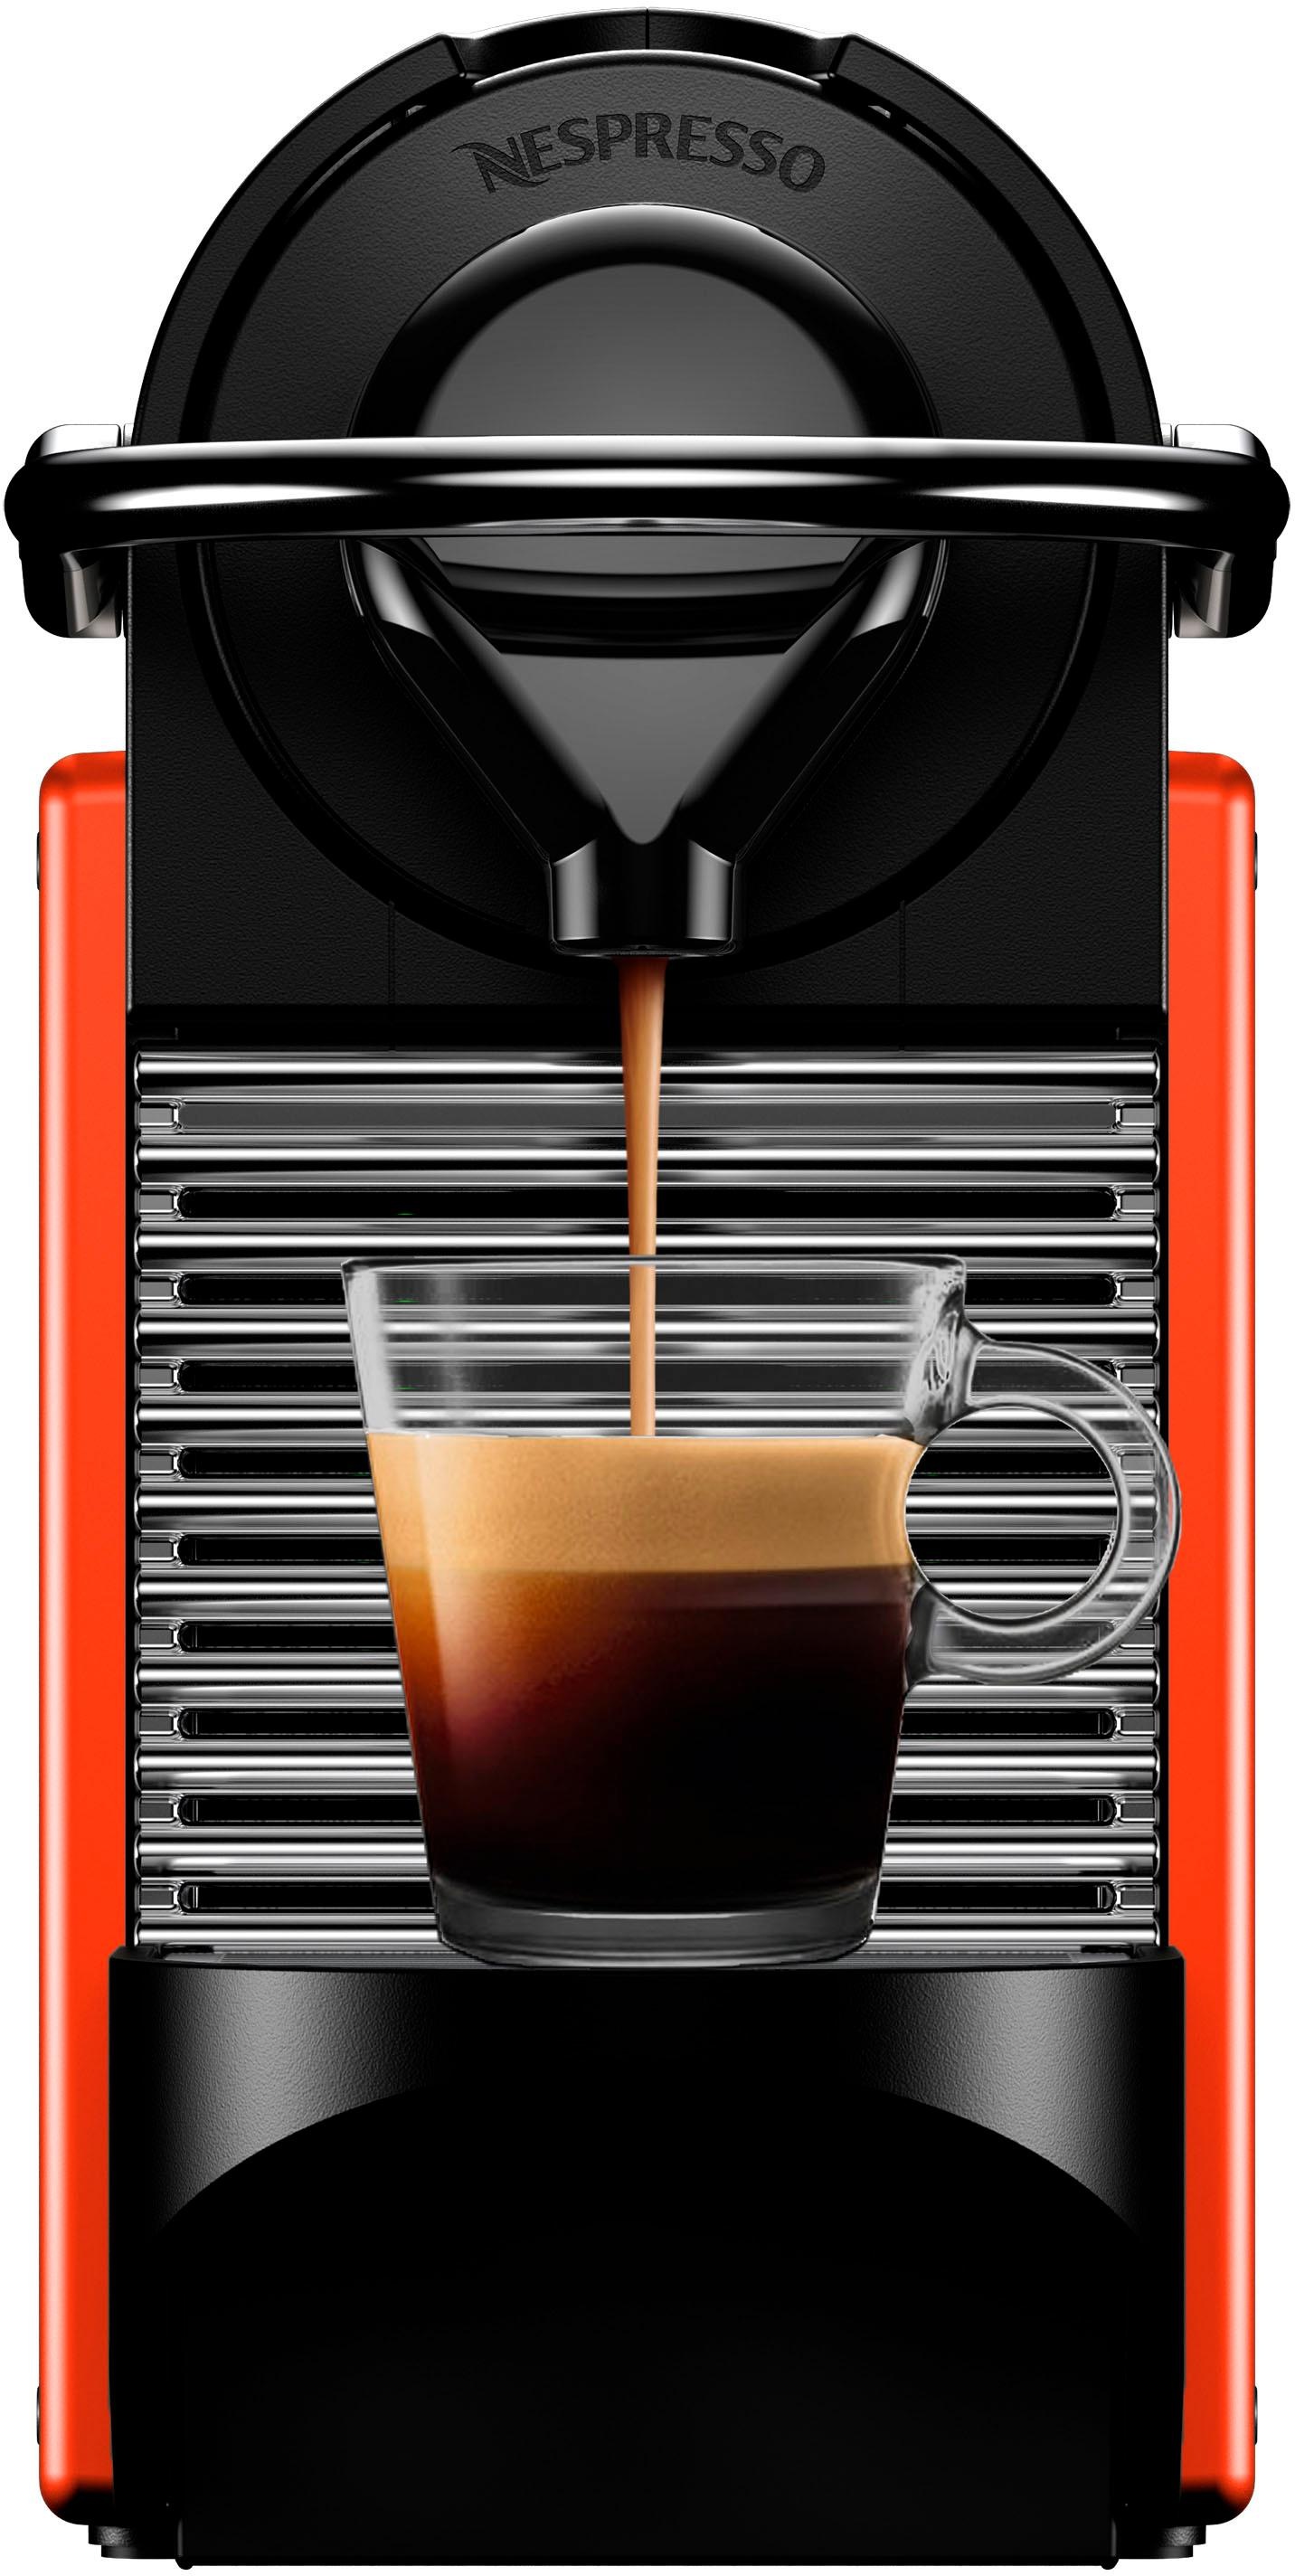 Nespresso Kapselmaschine »Pixie XN3045 von Krups, Red«, inkl. Willkommenspaket mit 7 Kapseln